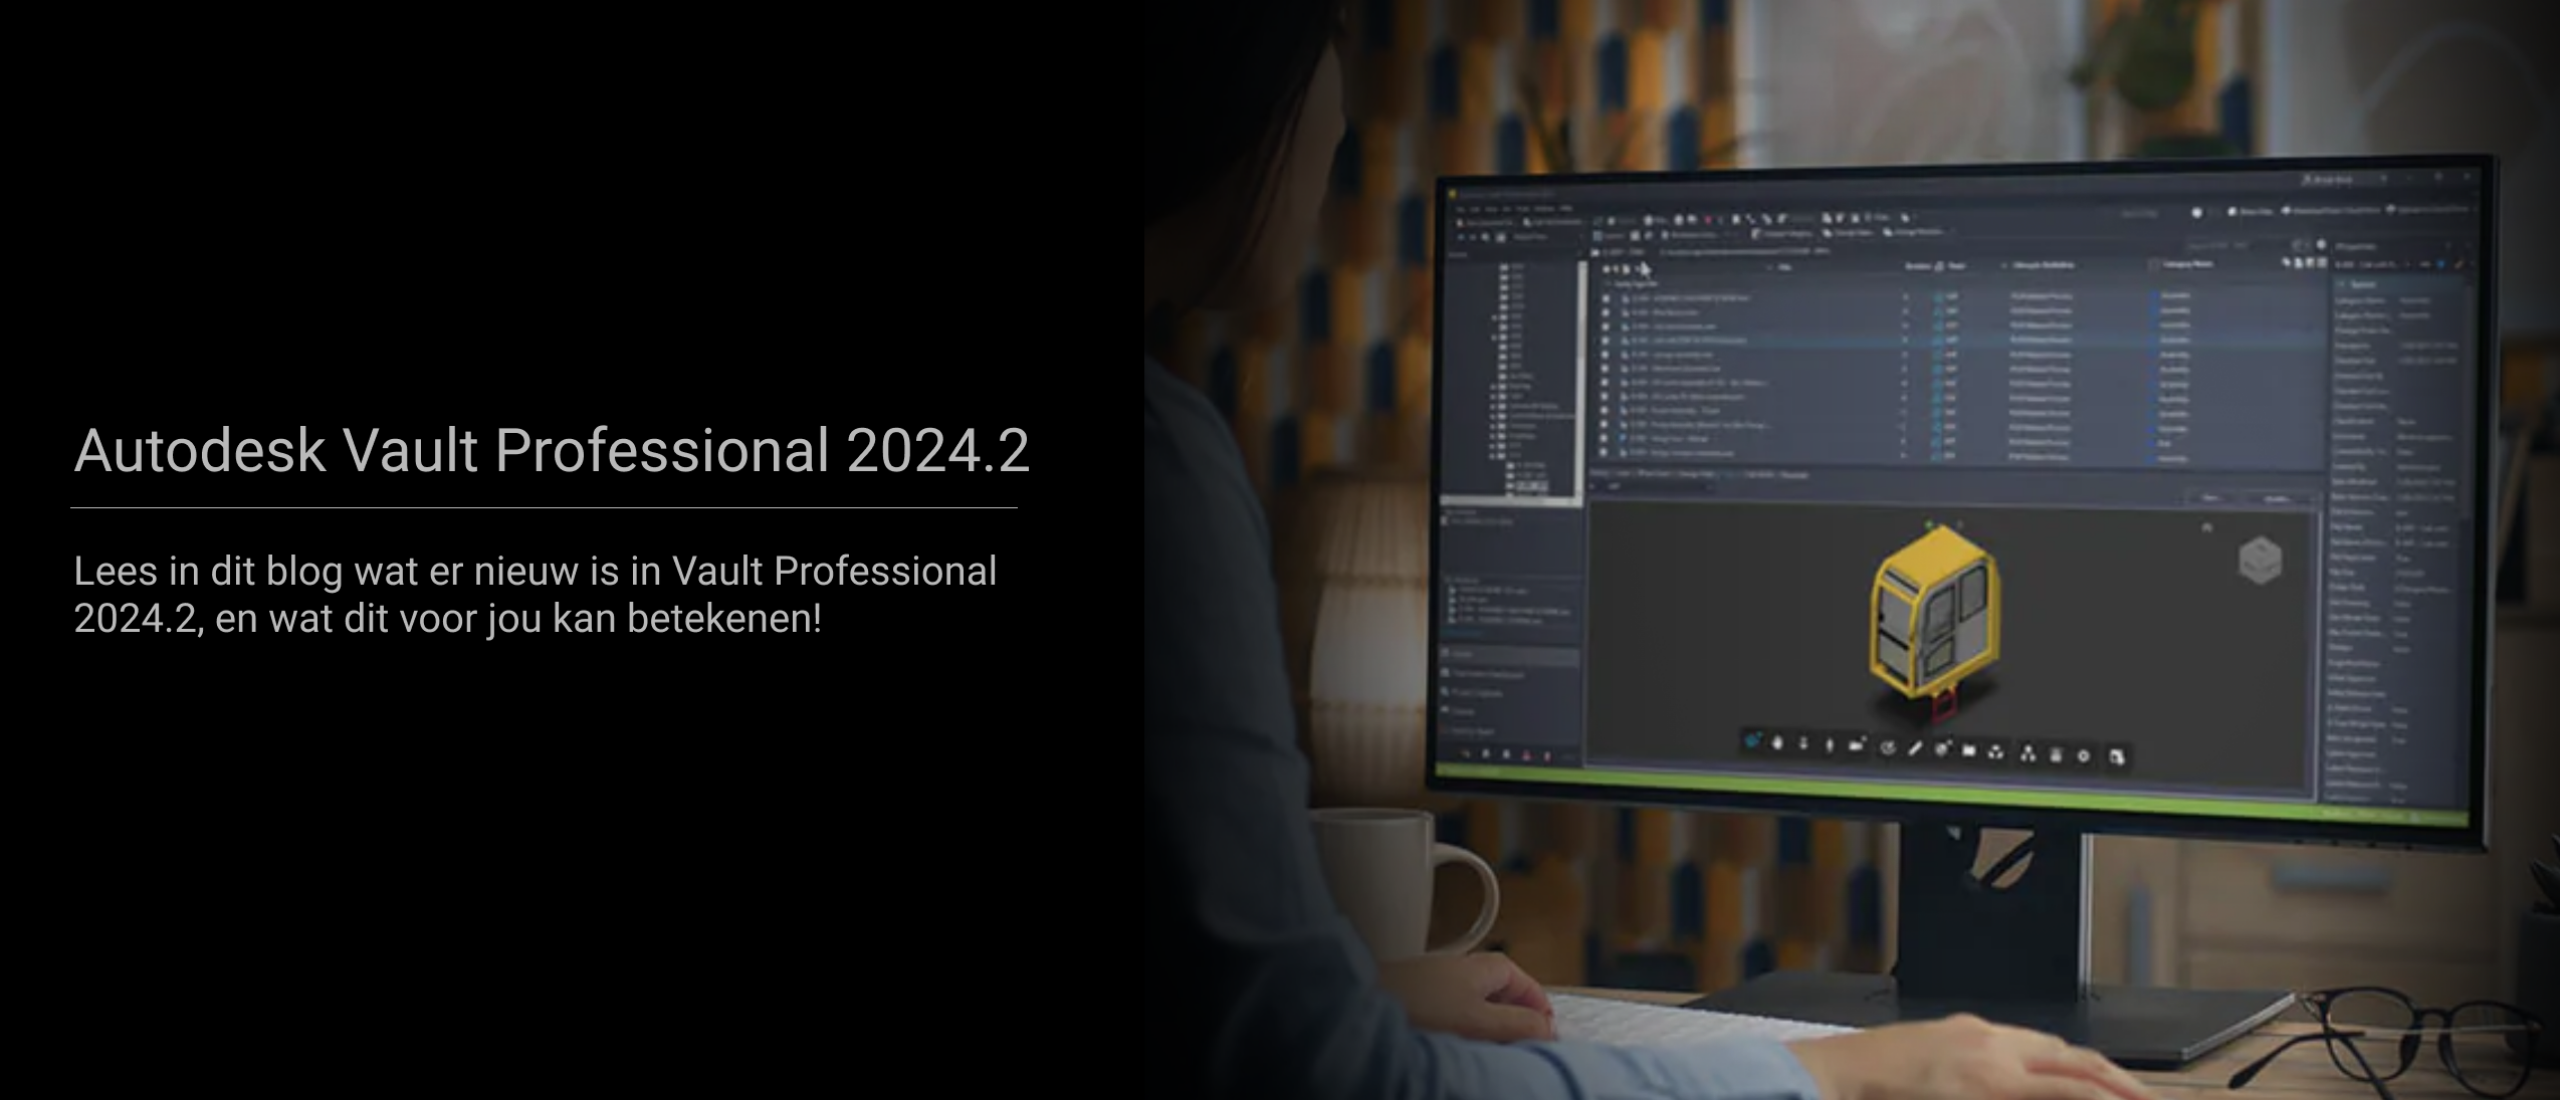 Ontdek wat er nieuw is in Autodesk Vault Professional 2024.2